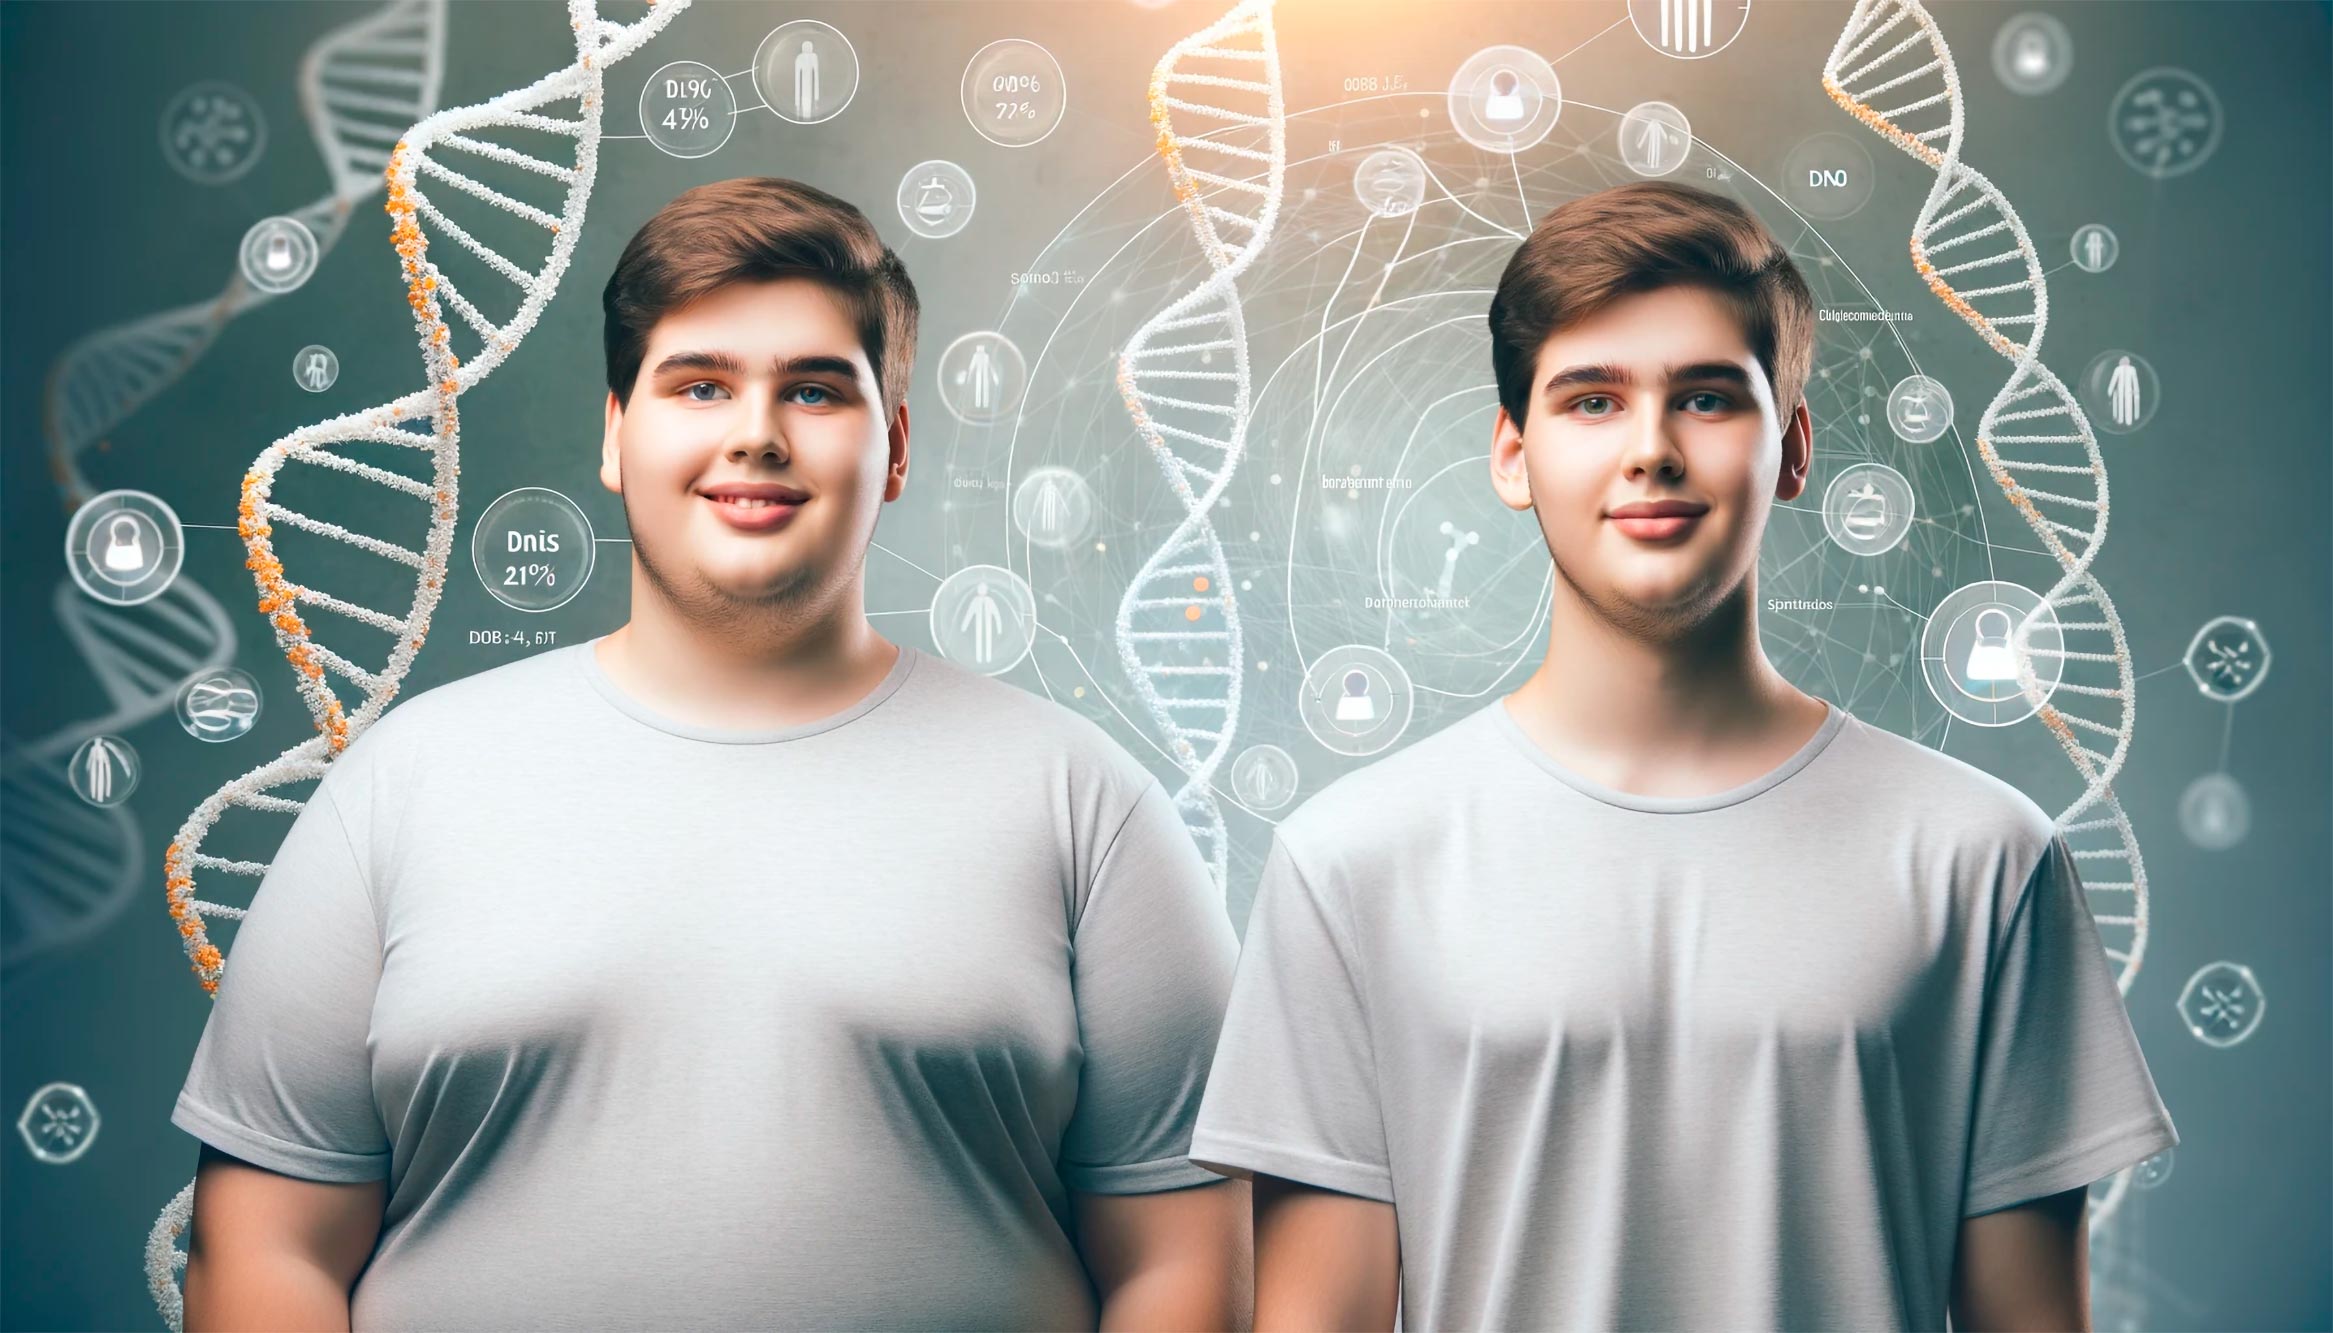 Come i gemelli svelano i segreti dell’obesità molecolare